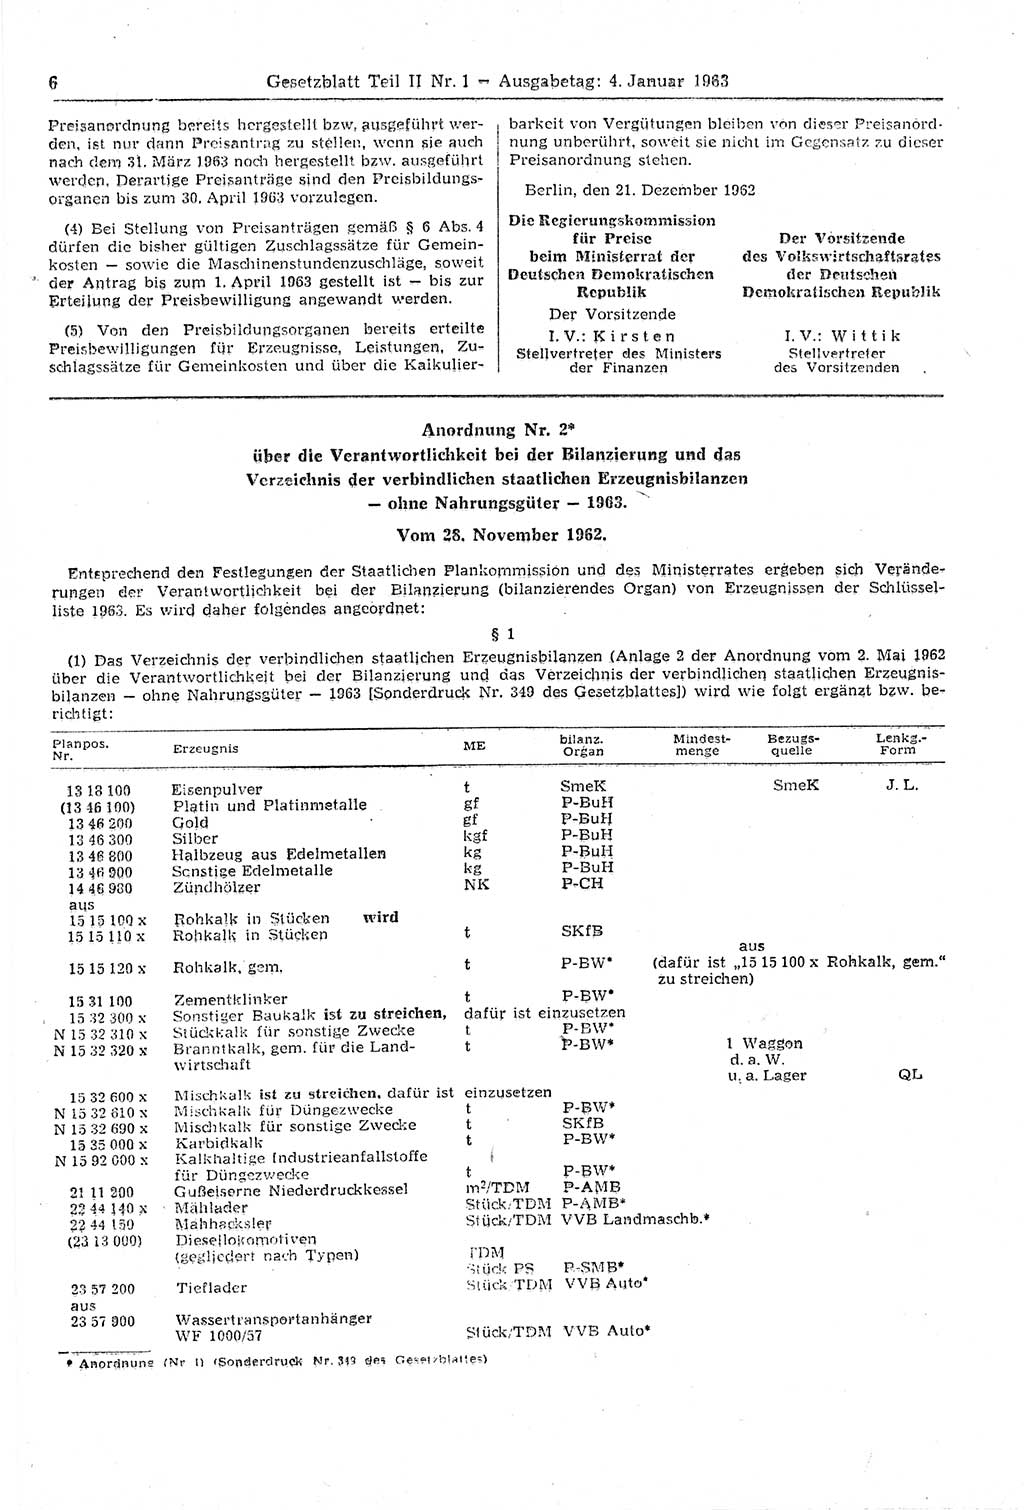 Gesetzblatt (GBl.) der Deutschen Demokratischen Republik (DDR) Teil ⅠⅠ 1963, Seite 6 (GBl. DDR ⅠⅠ 1963, S. 6)